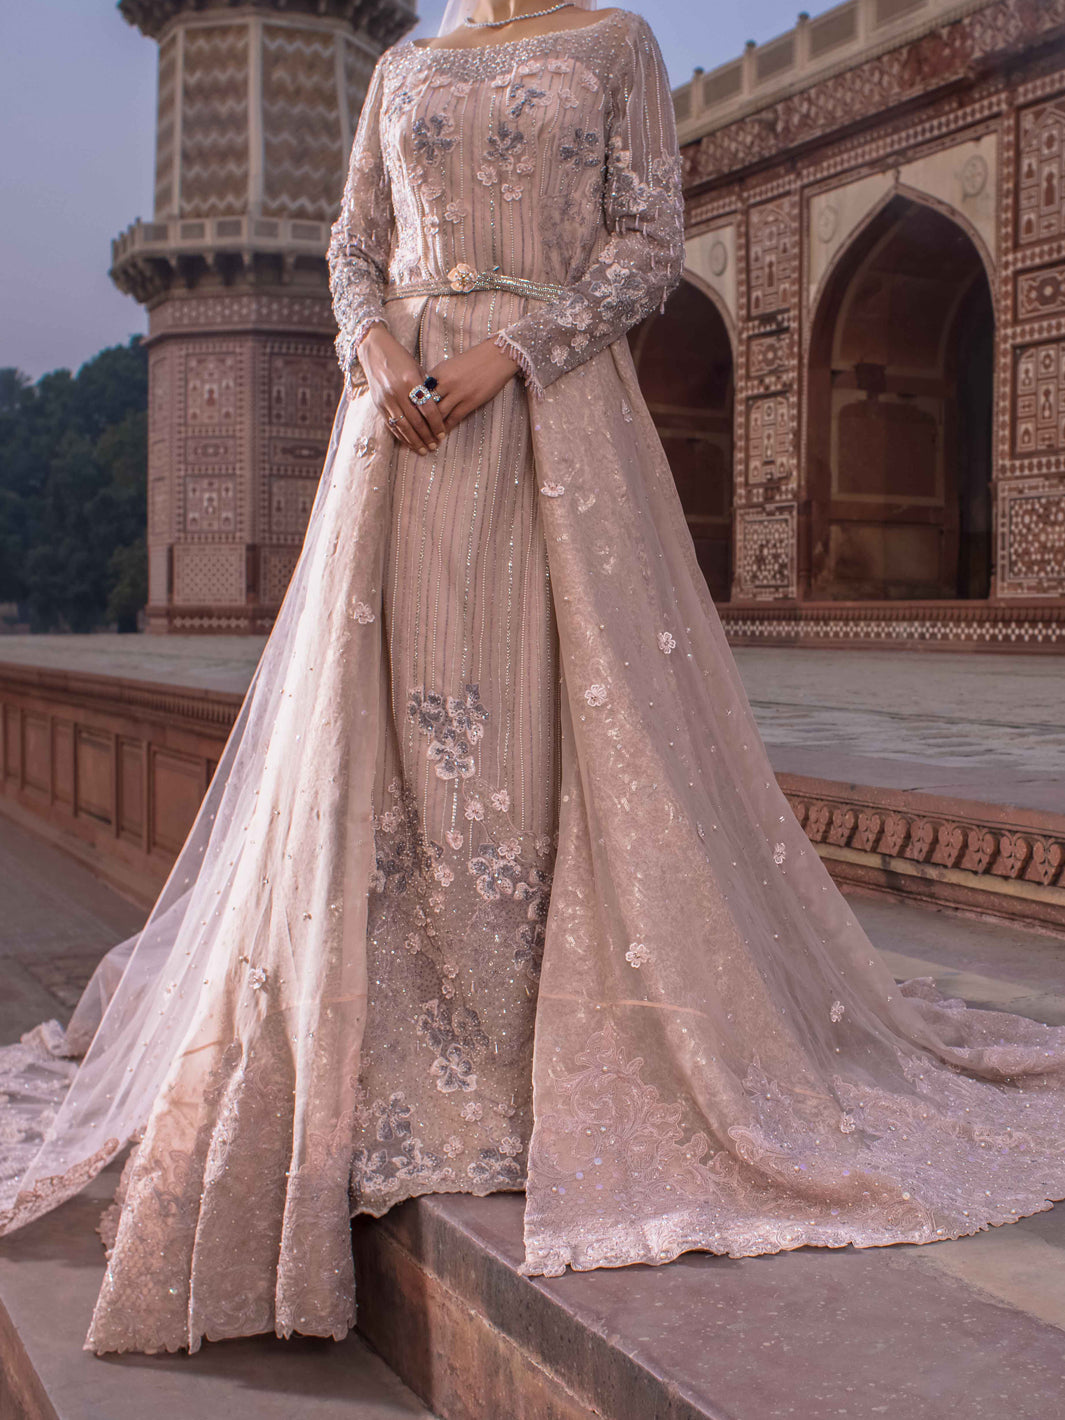 Indian Saree Wedding Dress Inspiration - Rock My Wedding